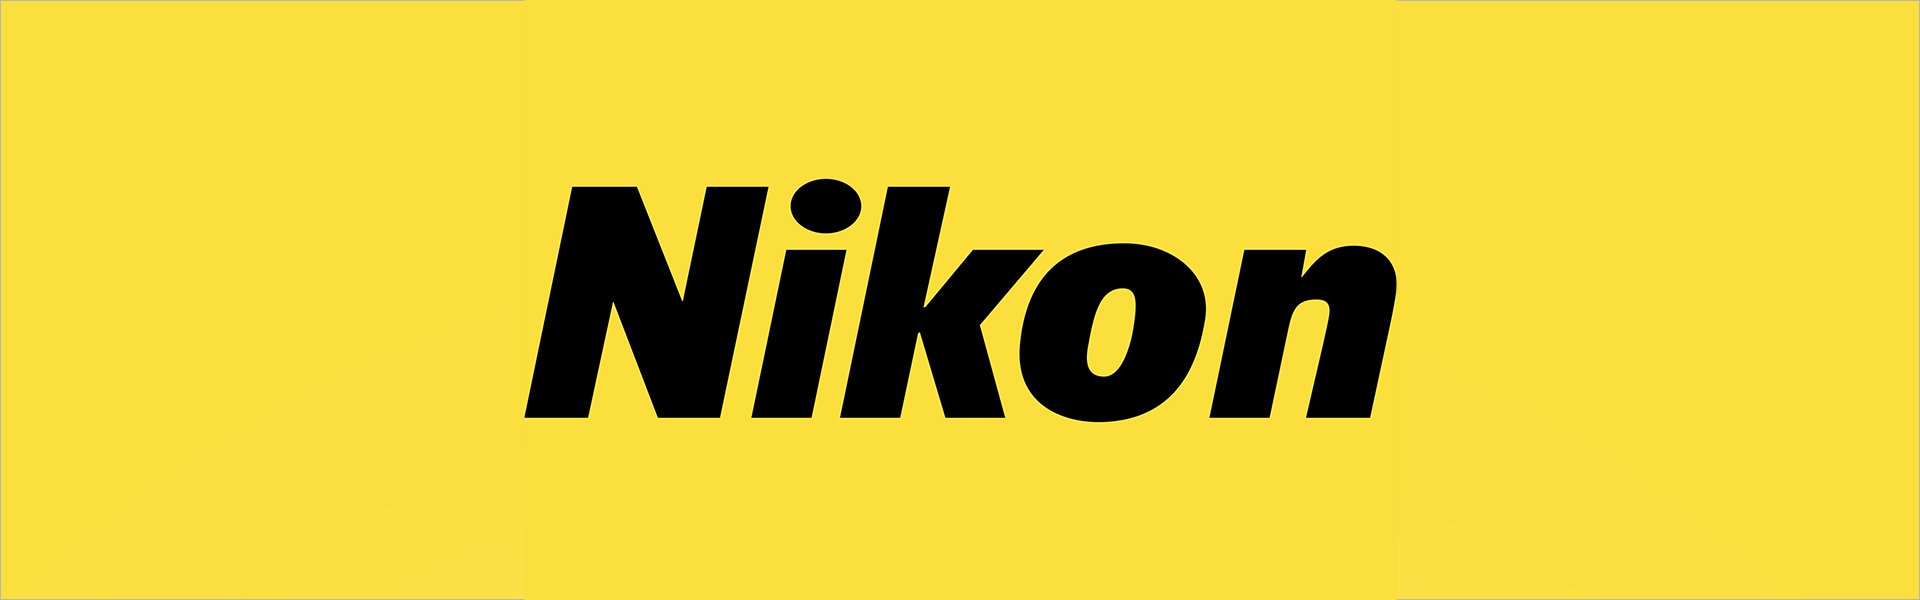 Nikon AF-S NIKKOR 70-200mm f/2.8E FL ED VR 